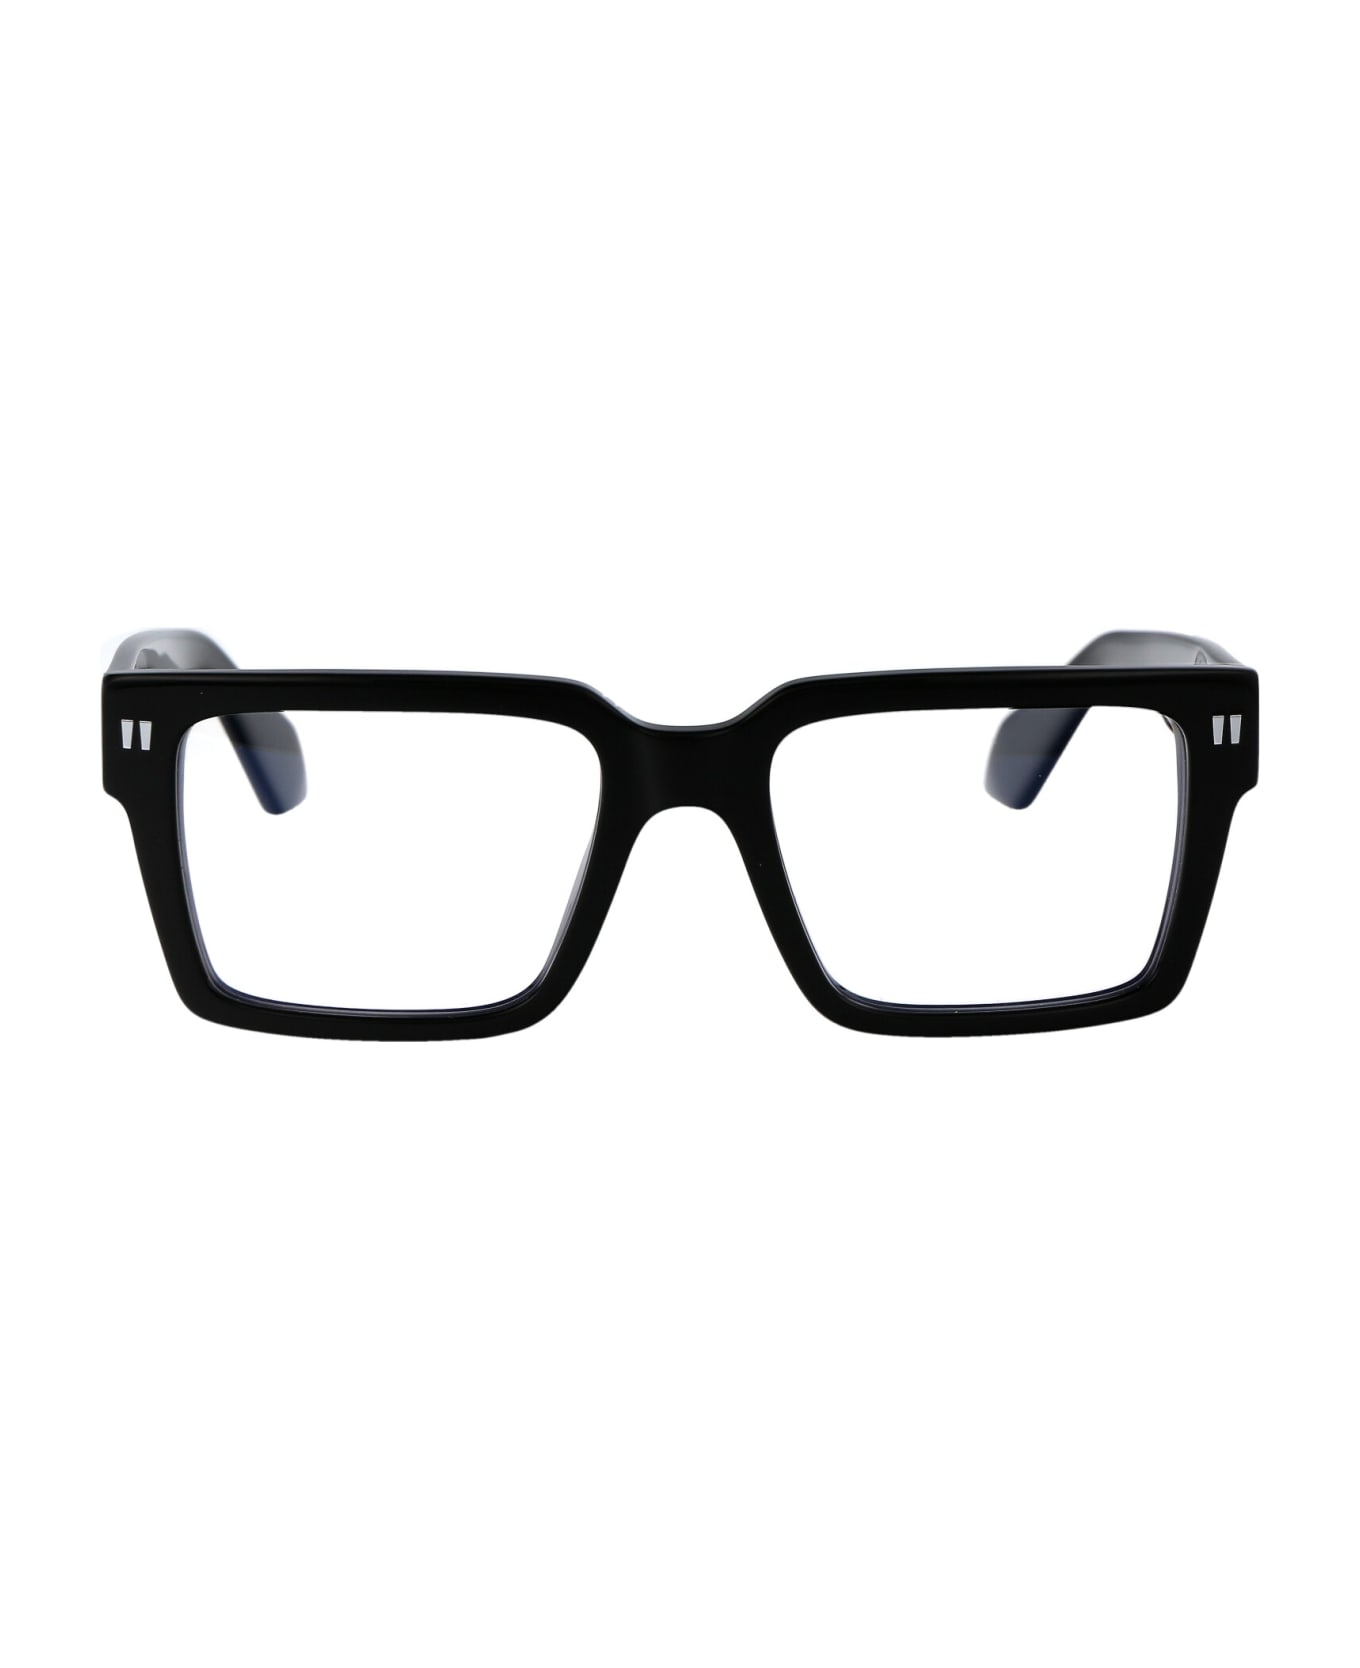 Off-White Optical Style 54 Glasses - 1000 BLACK アイウェア